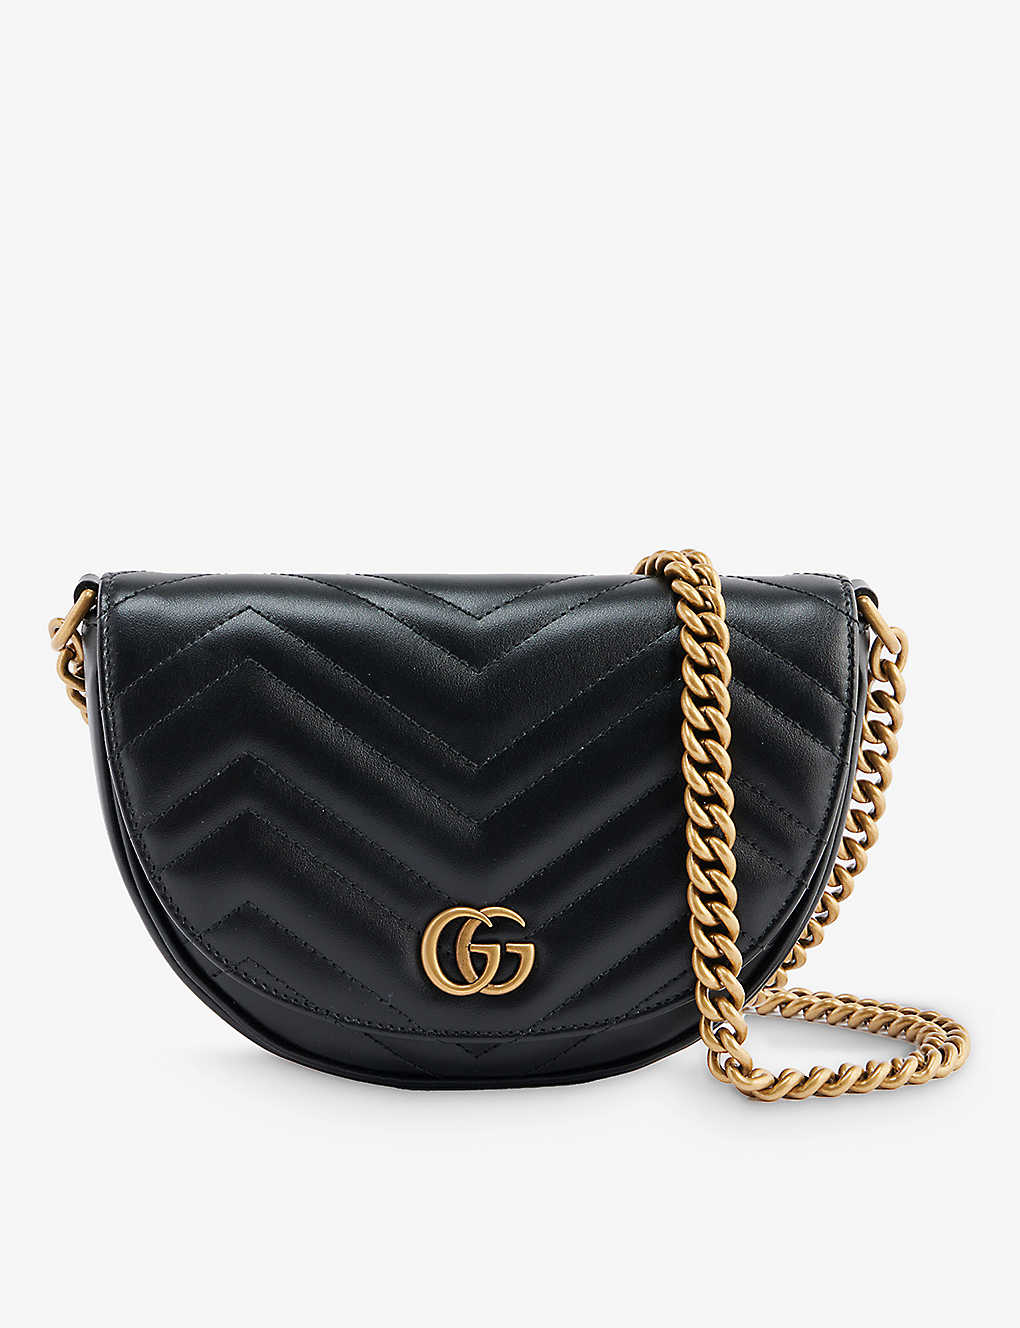 Gucci Gg Marmont Brand-plaque Leather Cross-body Bag In Nero/nero